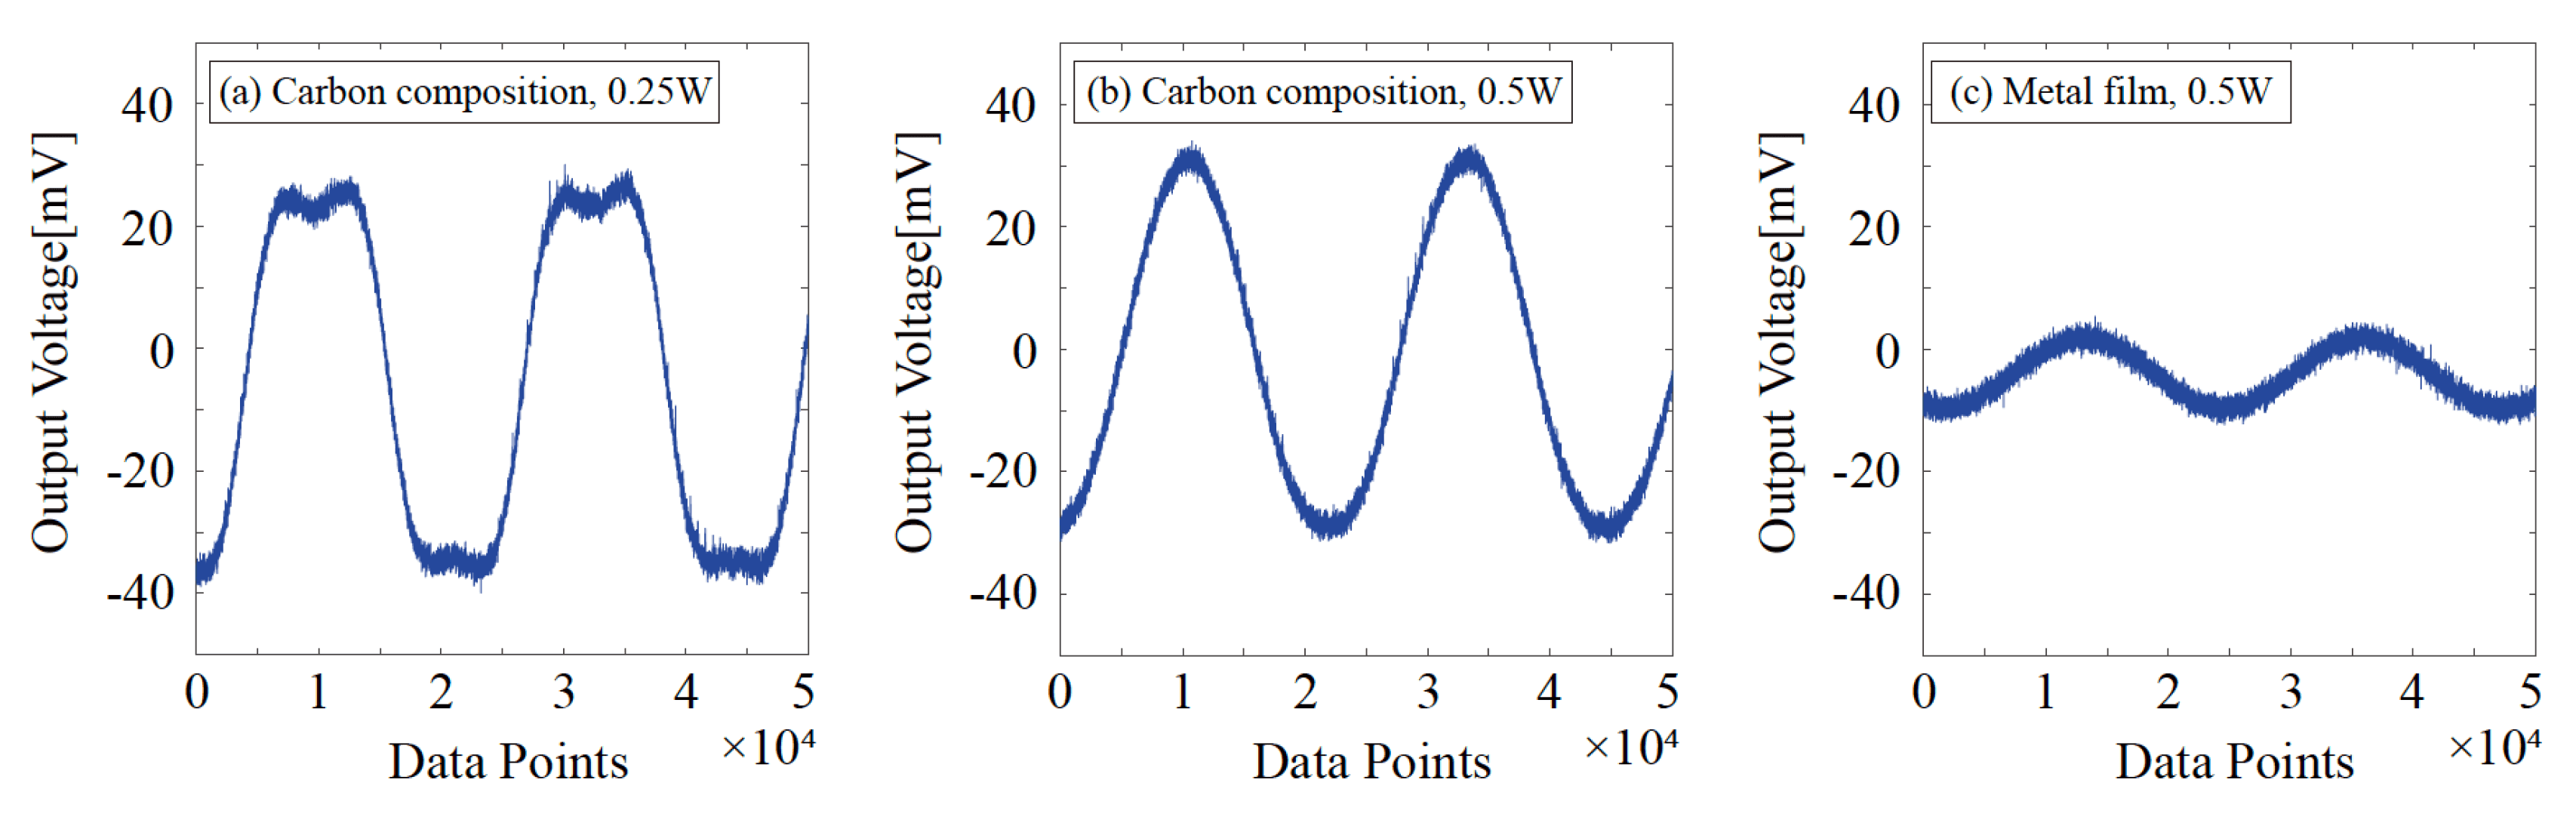 図3 ブリッジ回路からの出力波形の例。炭素組成抵�抗器0.25W型（左）と0.5W型(中)，金属被膜抵抗器0.5W型（右）。